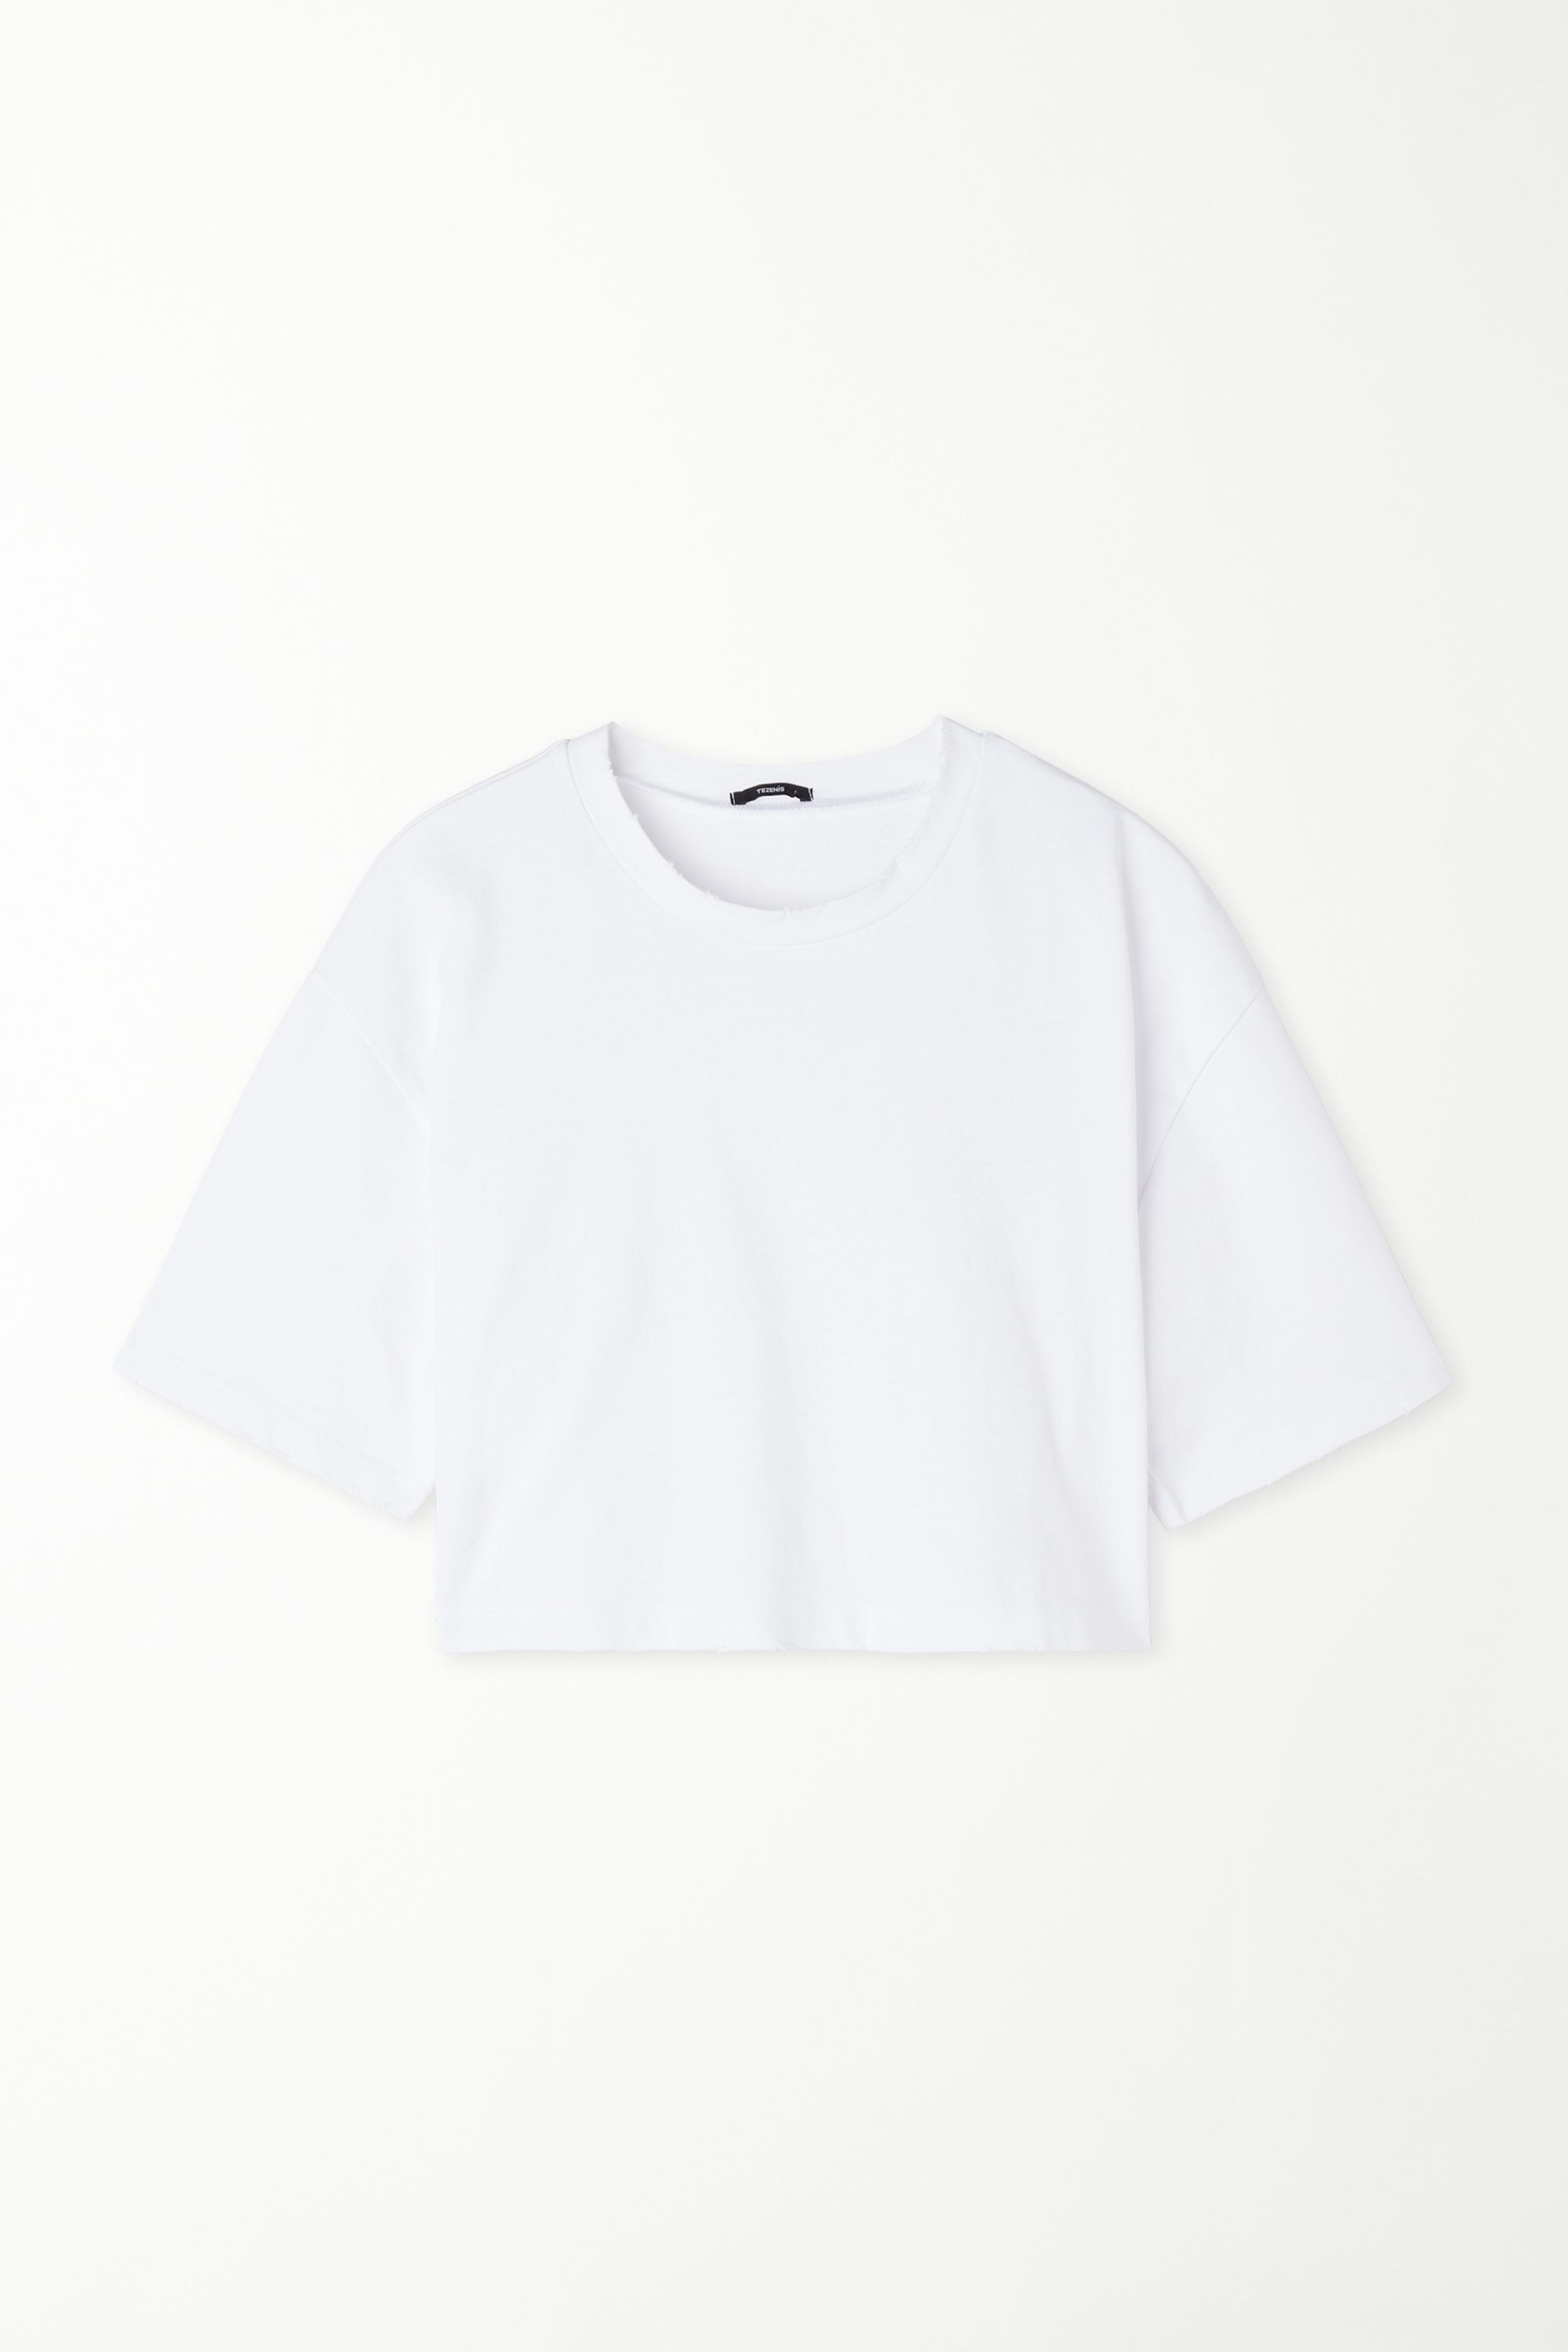 Short Cotton Round-Neckline T-Shirt